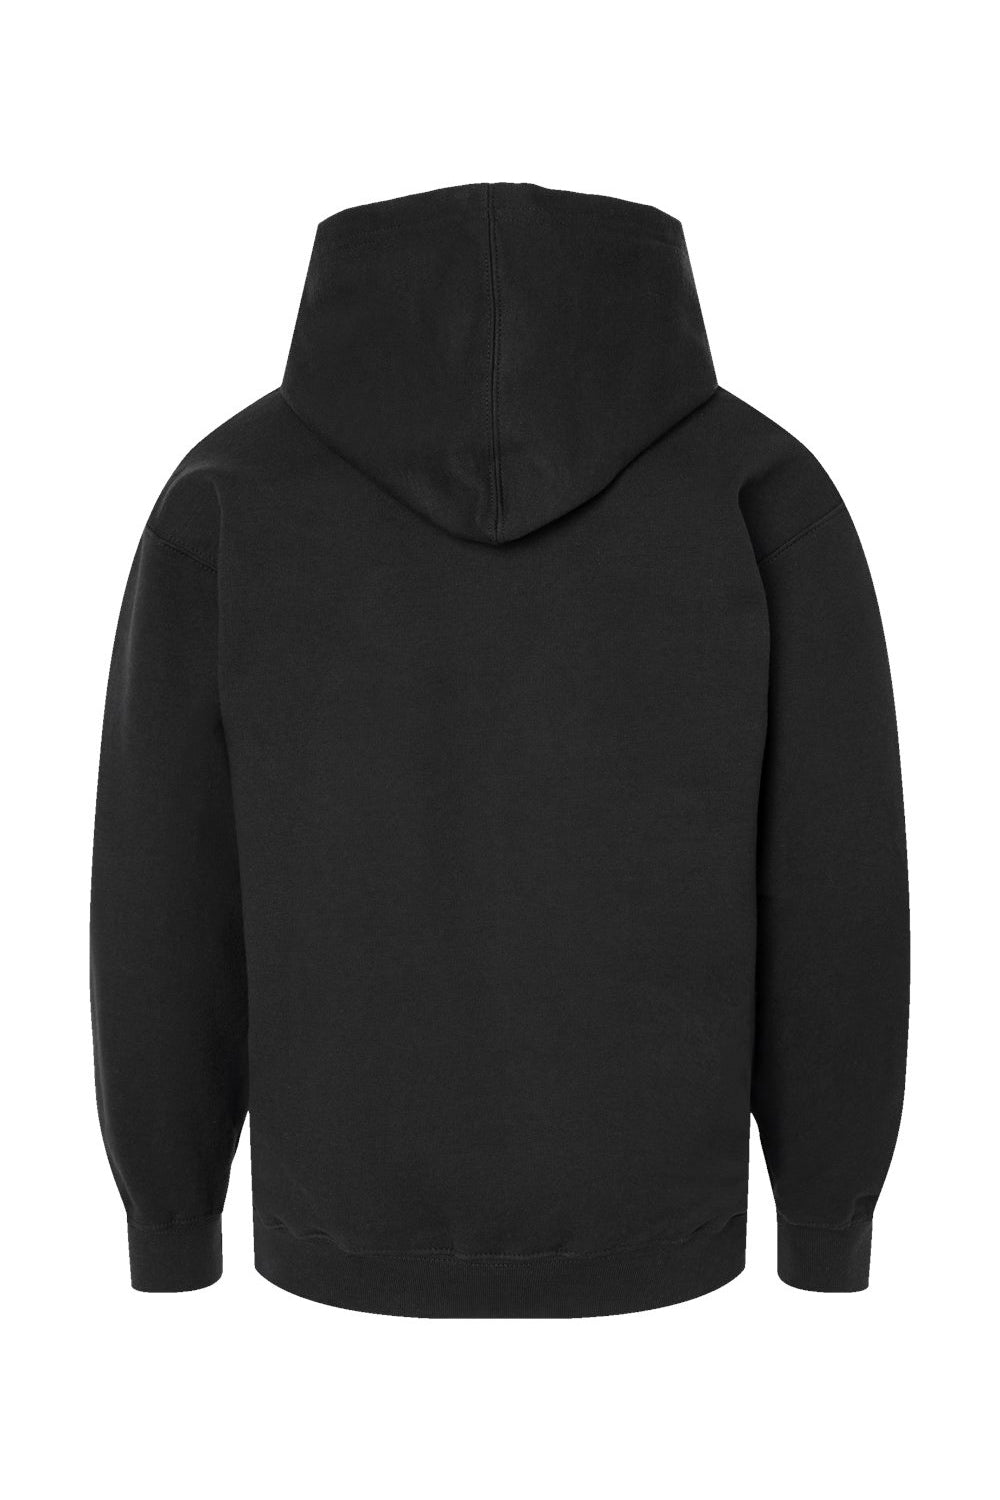 Tultex 320Y Youth Hooded Sweatshirt Hoodie Black Flat Back